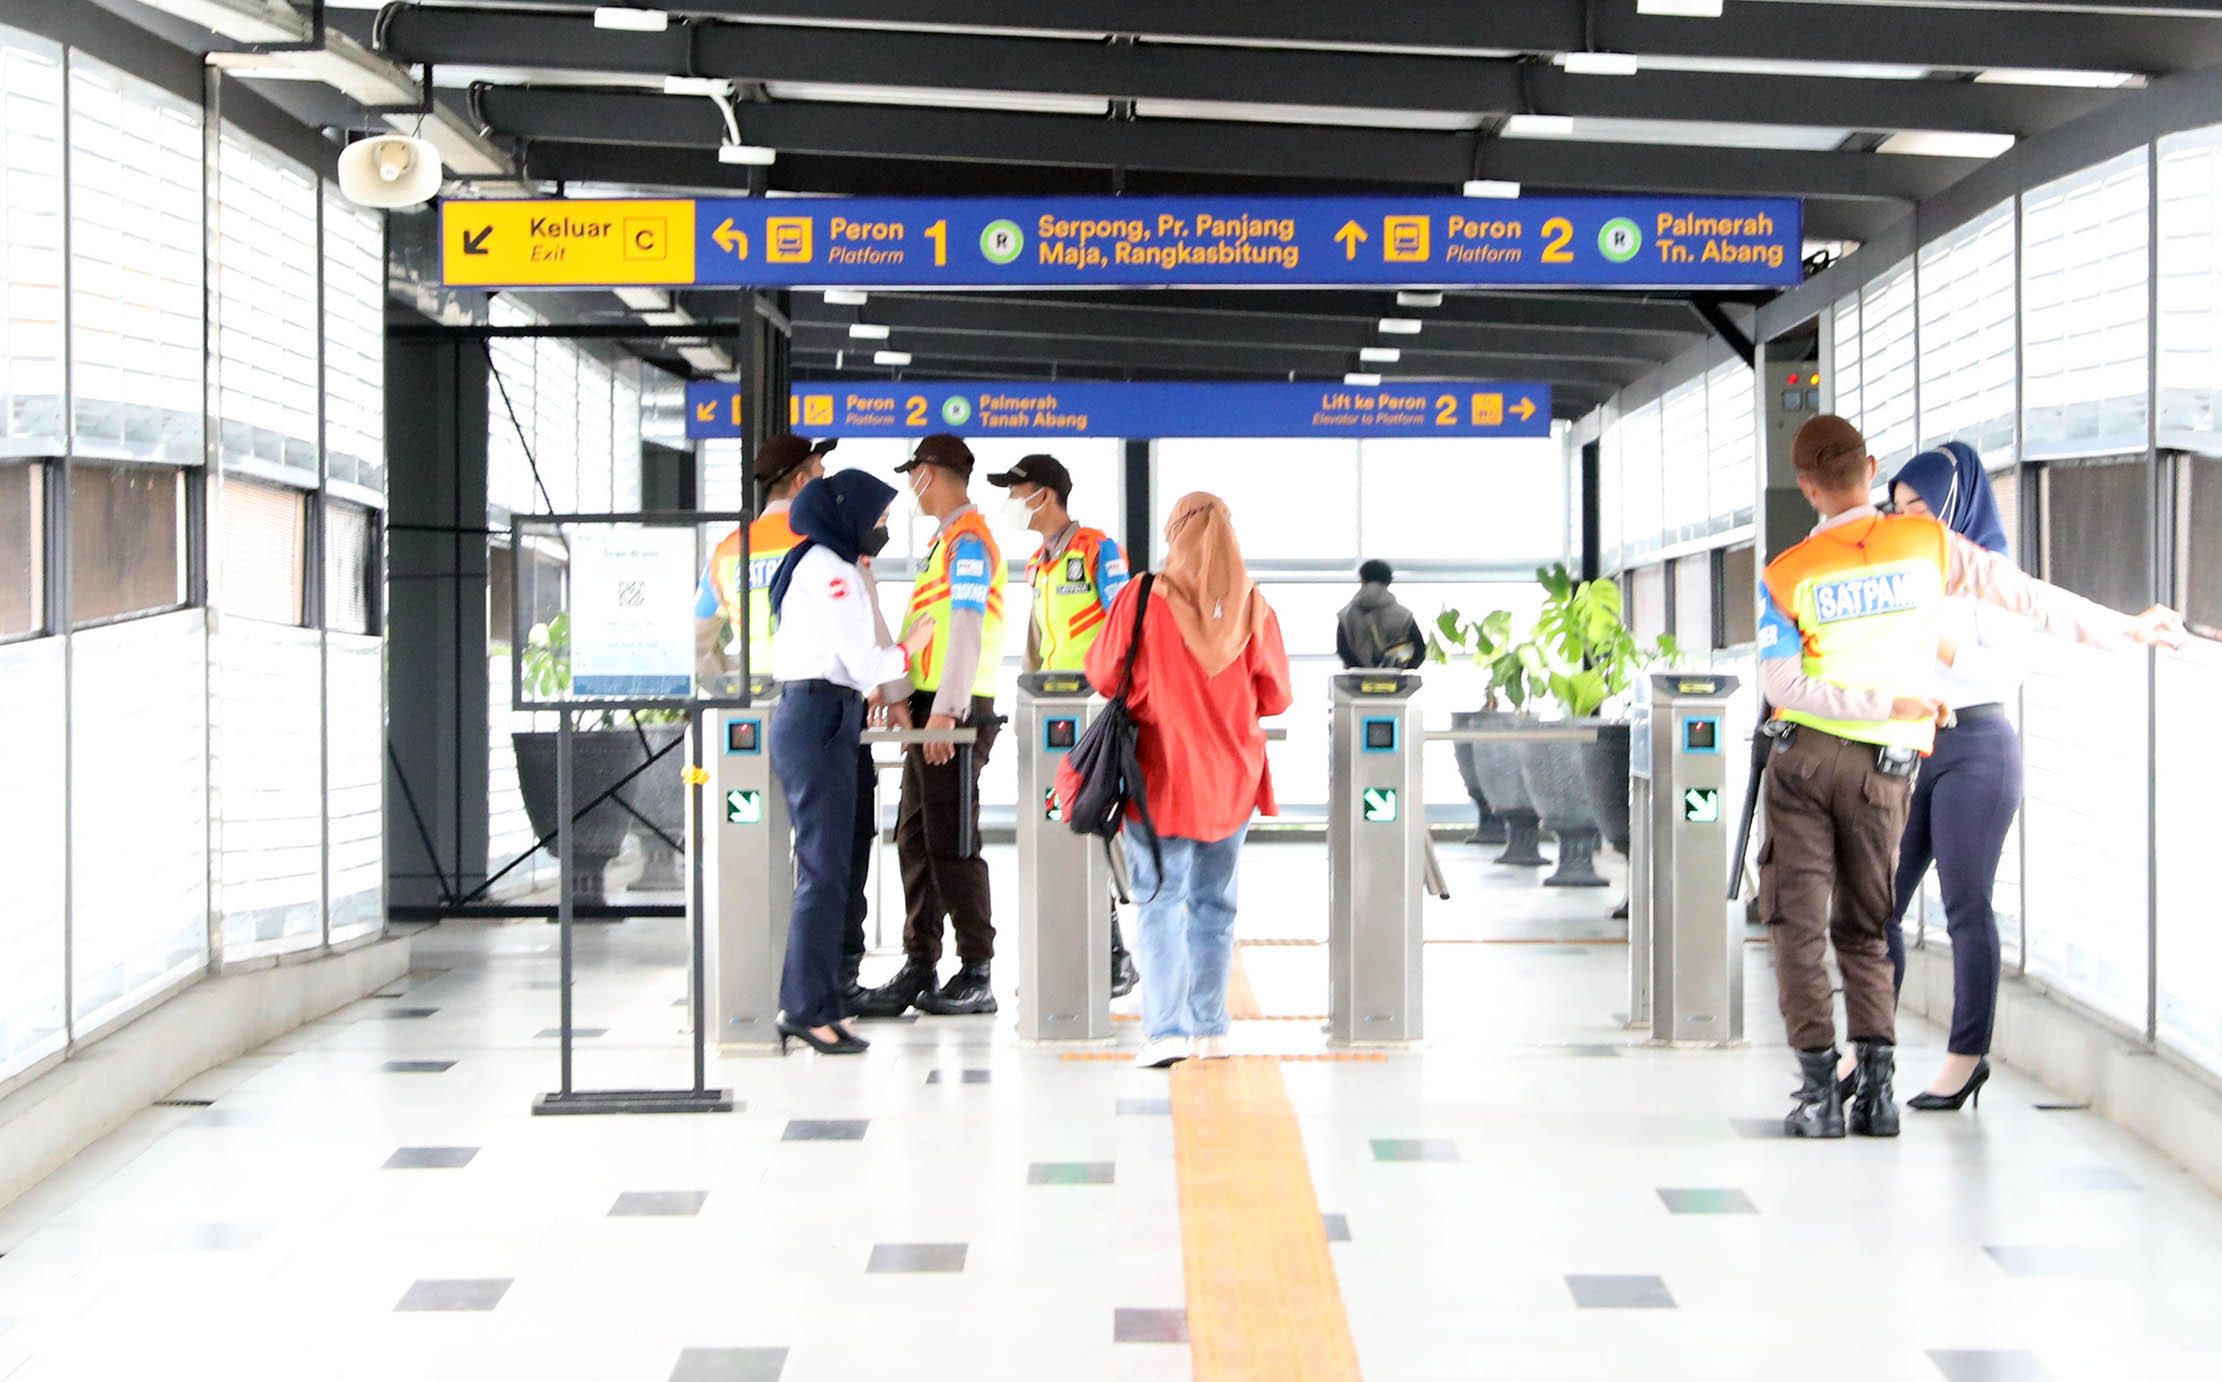 Suasana di Stasiun Pondok Ranji, Tangerang Selatan usai program revitalisasi dalam rangka peningkatan dan Aksesibilitas dan Penataan,Jumat 17 Juni 2022. Foto : Panji Asmoro/TrenAsia